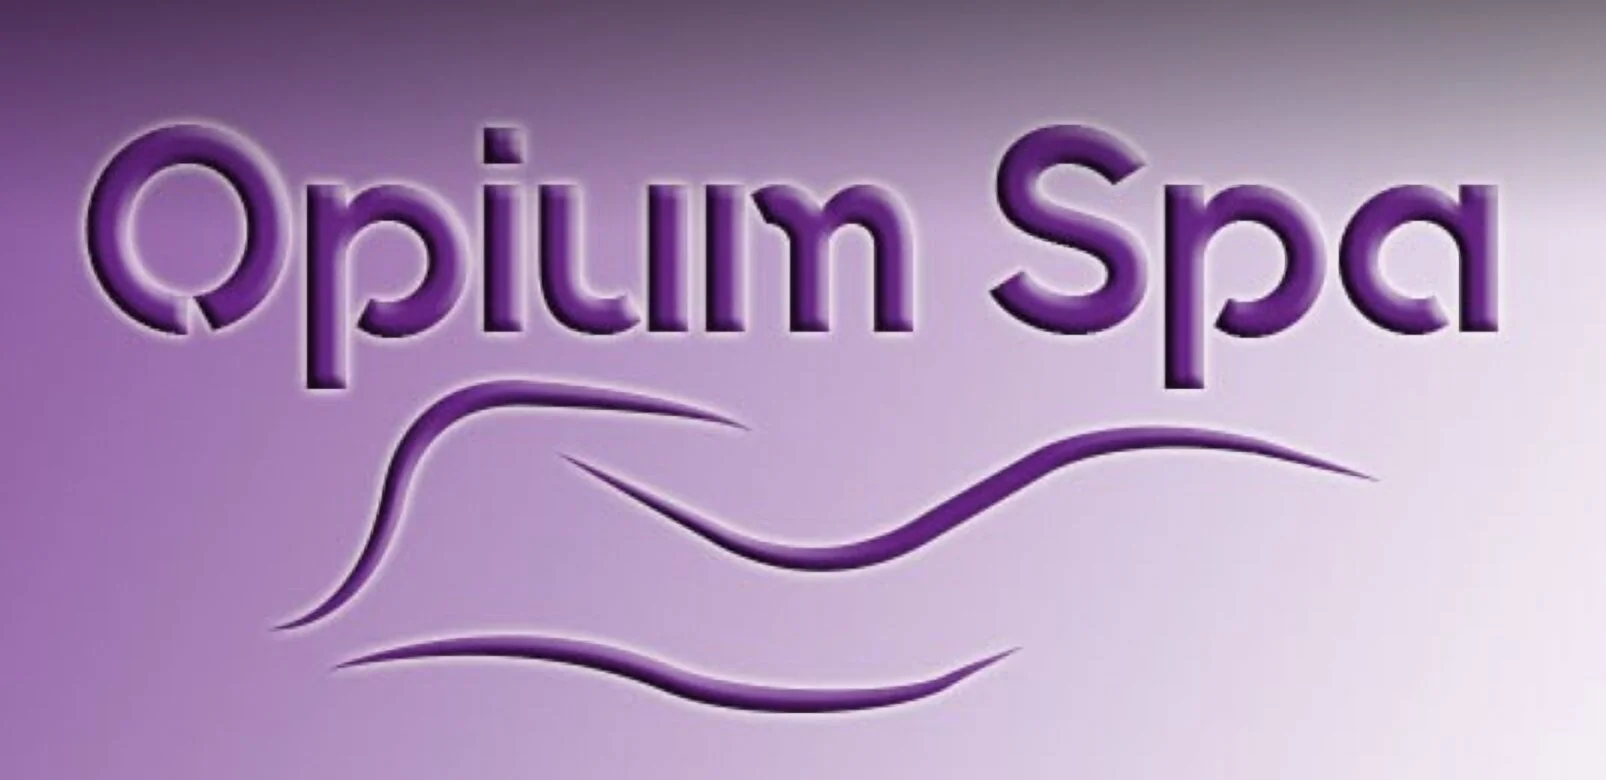 Spa-opium-spa-5149